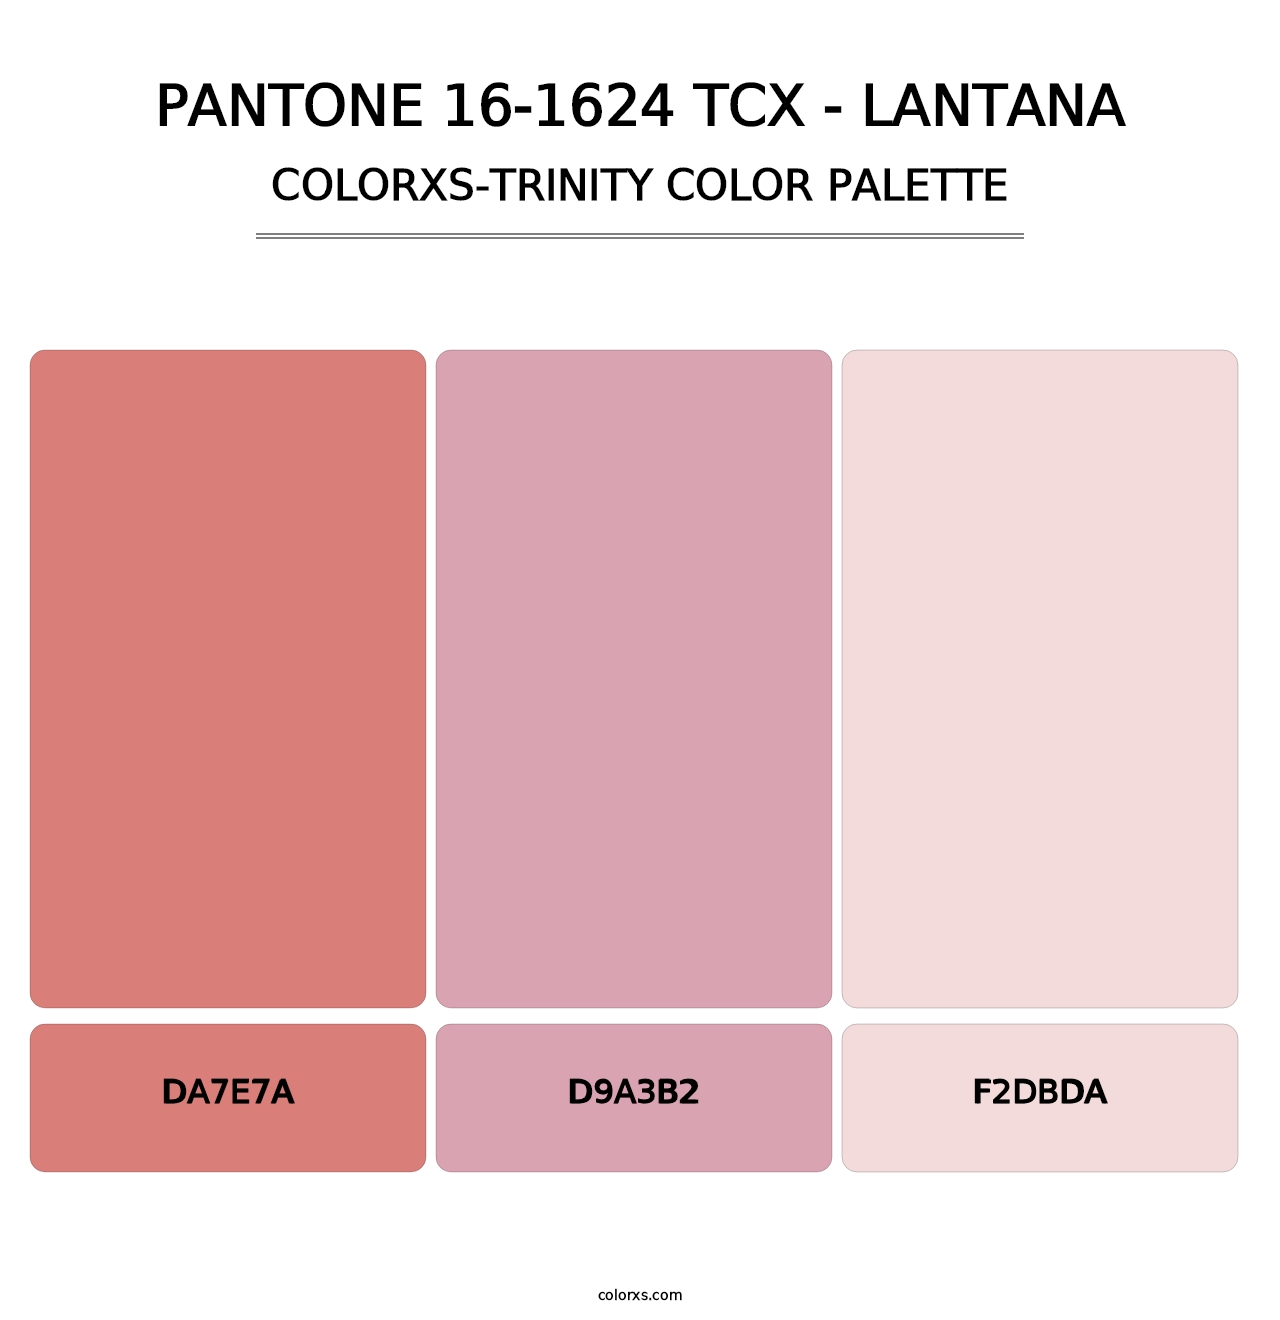 PANTONE 16-1624 TCX - Lantana - Colorxs Trinity Palette